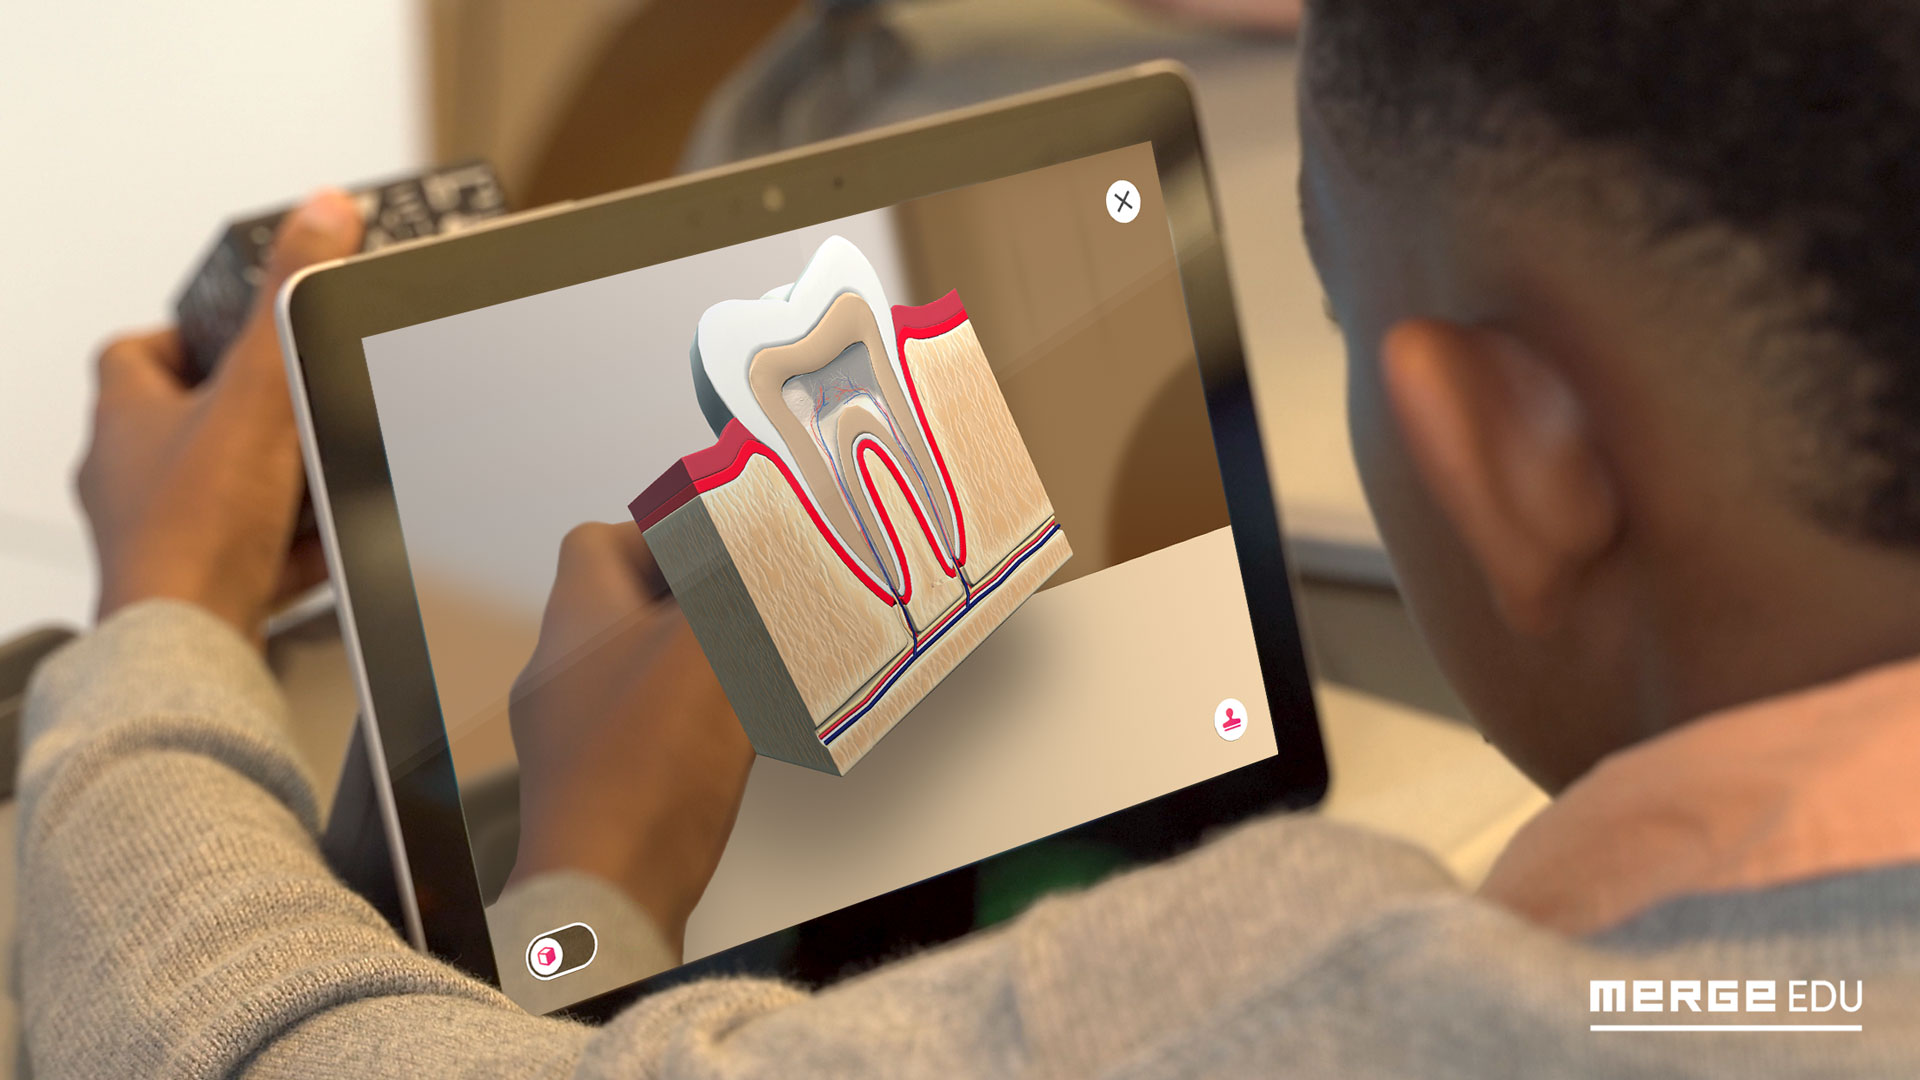 Ein Schüler betrachtet einen Merge-Cube durch ein Tablet, auf dem ein Zahn abgebildet ist